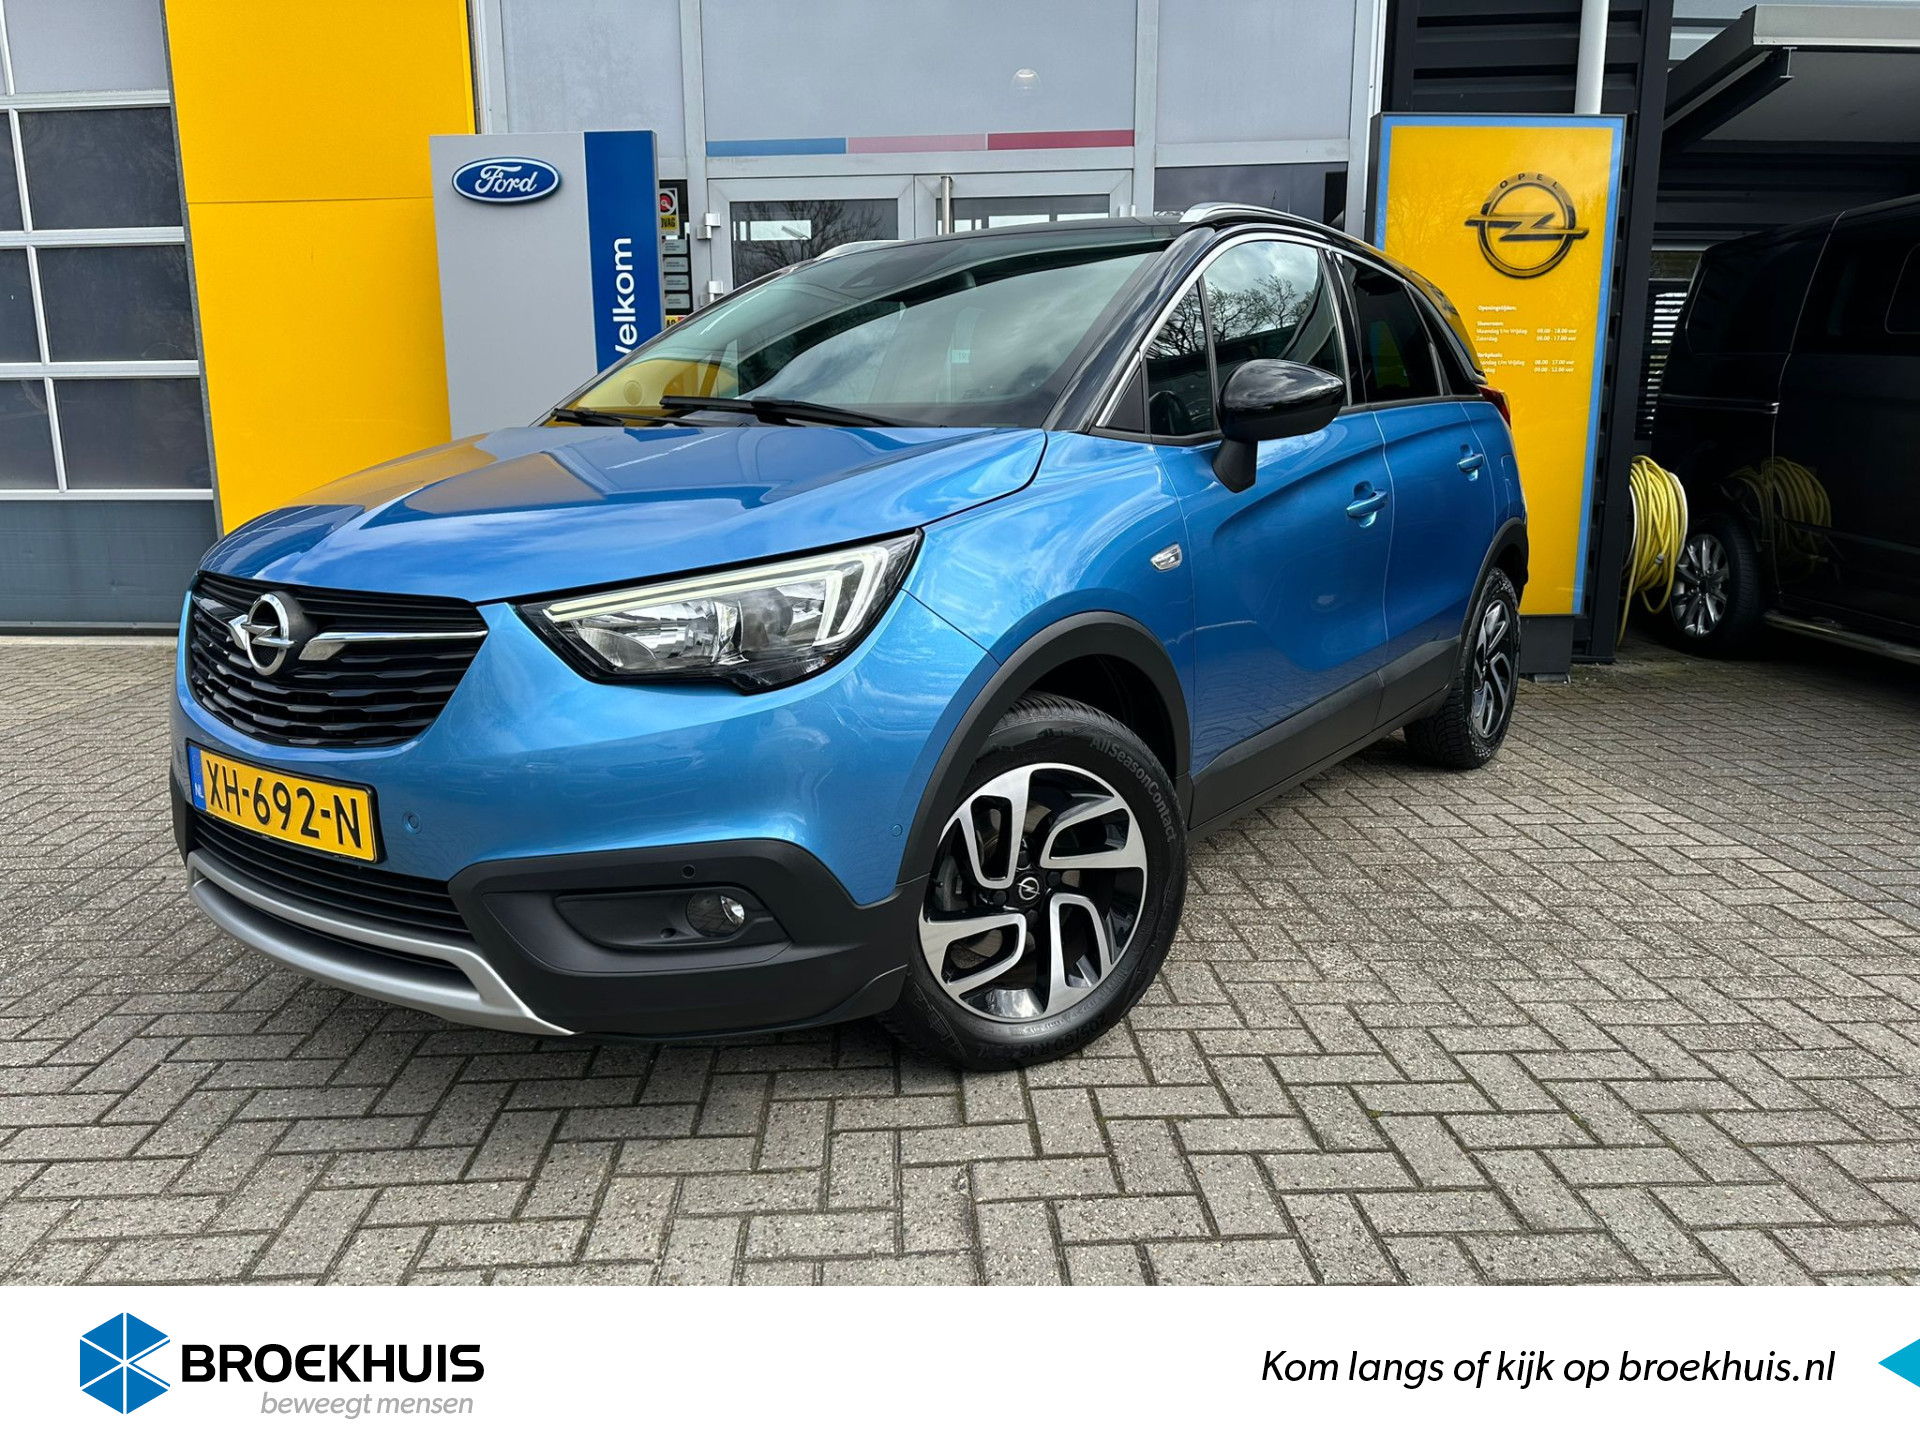 Opel Crossland X 1.2 Turbo 110PK INNOVATION+ | TREKHAAK AFN.BAAR| CAMERA| AGR-COMFORTSTOELEN| KEYLESS ENTRY & START| NAVIGATIE| ALL SEASONBANDEN bij viaBOVAG.nl